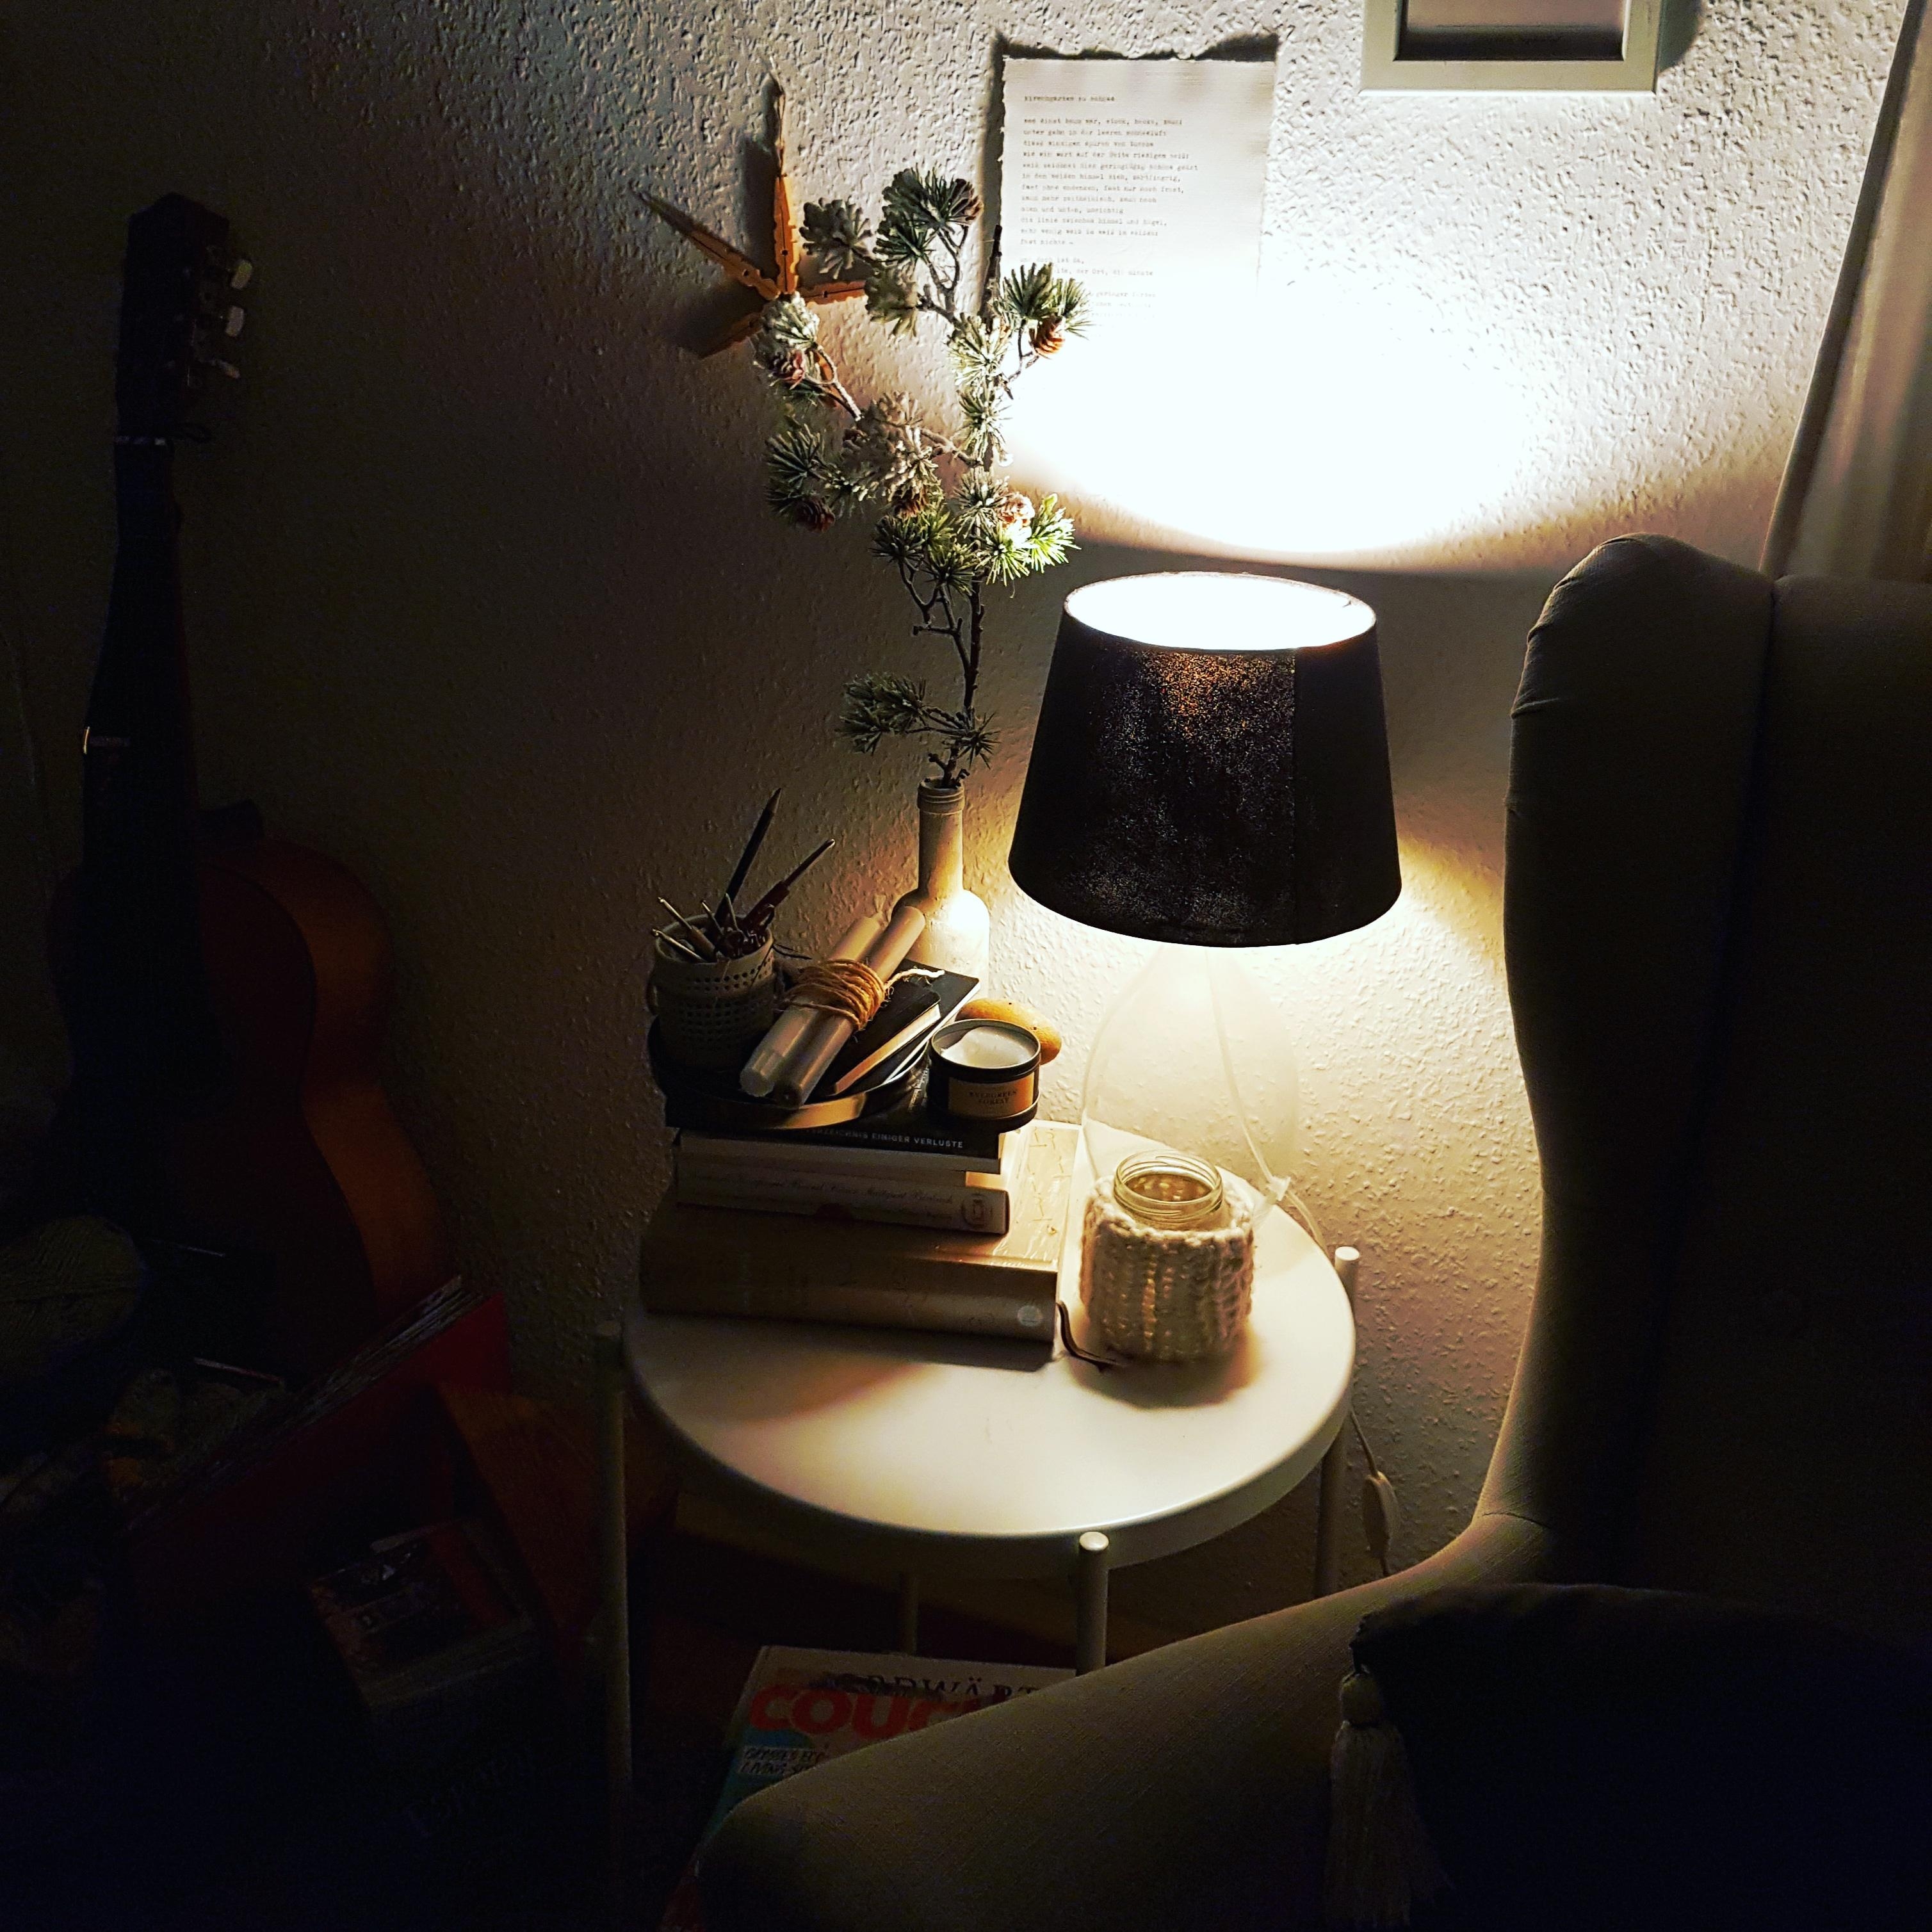 Dark night, cozy night- gerade richtig für coronamüde Augen... ☆
#wohnzimmer #sessel #nähecke #winterdeko #advent 